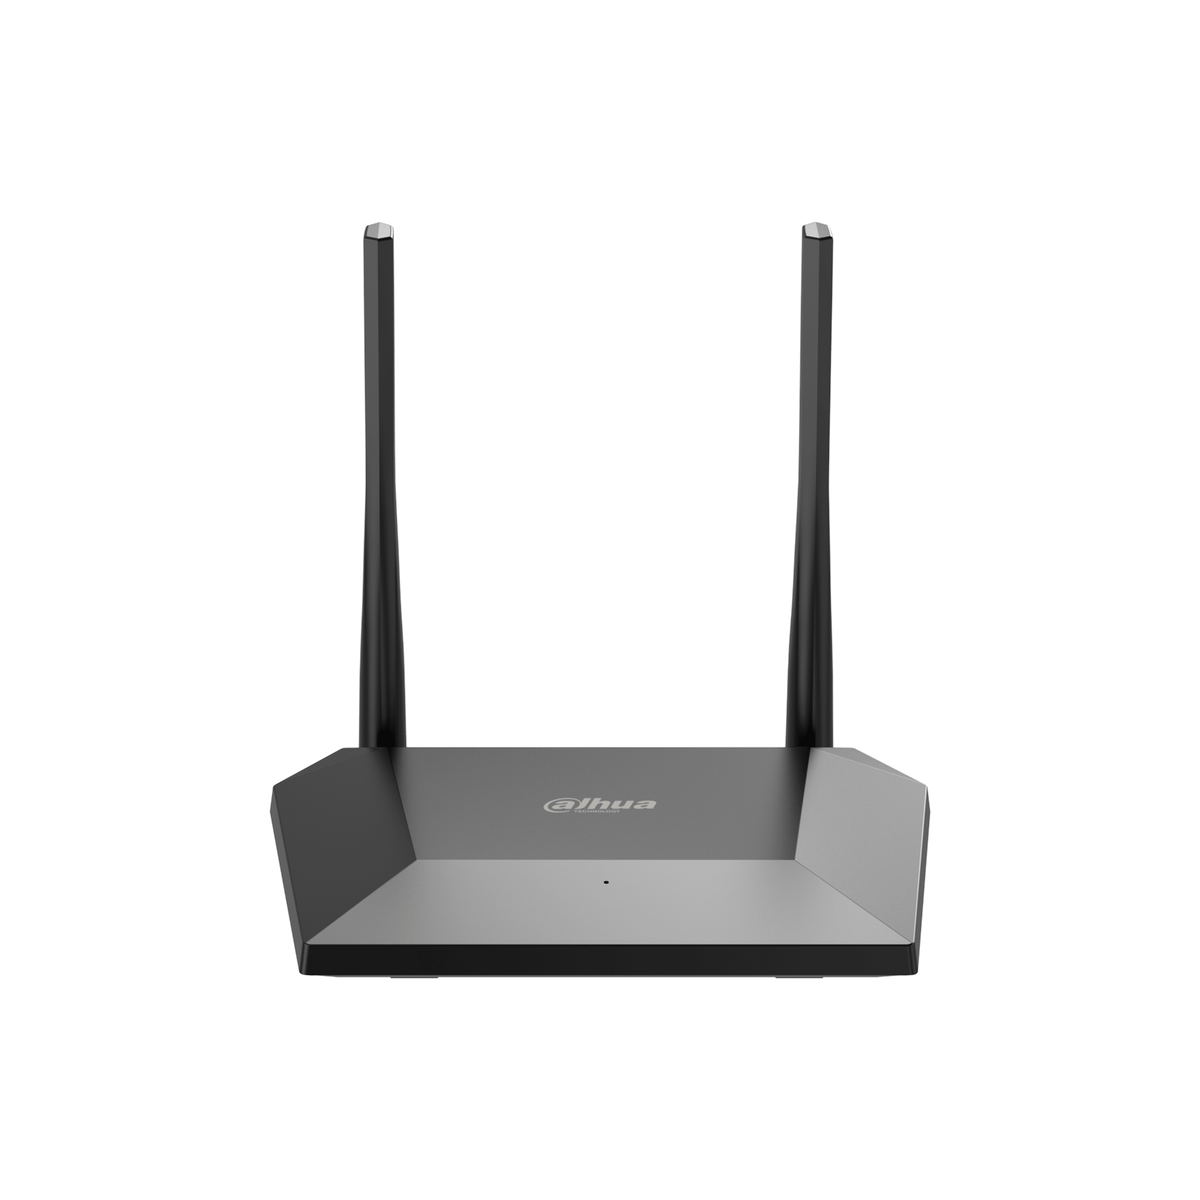 DAHUA N3 N300 Wireless Router